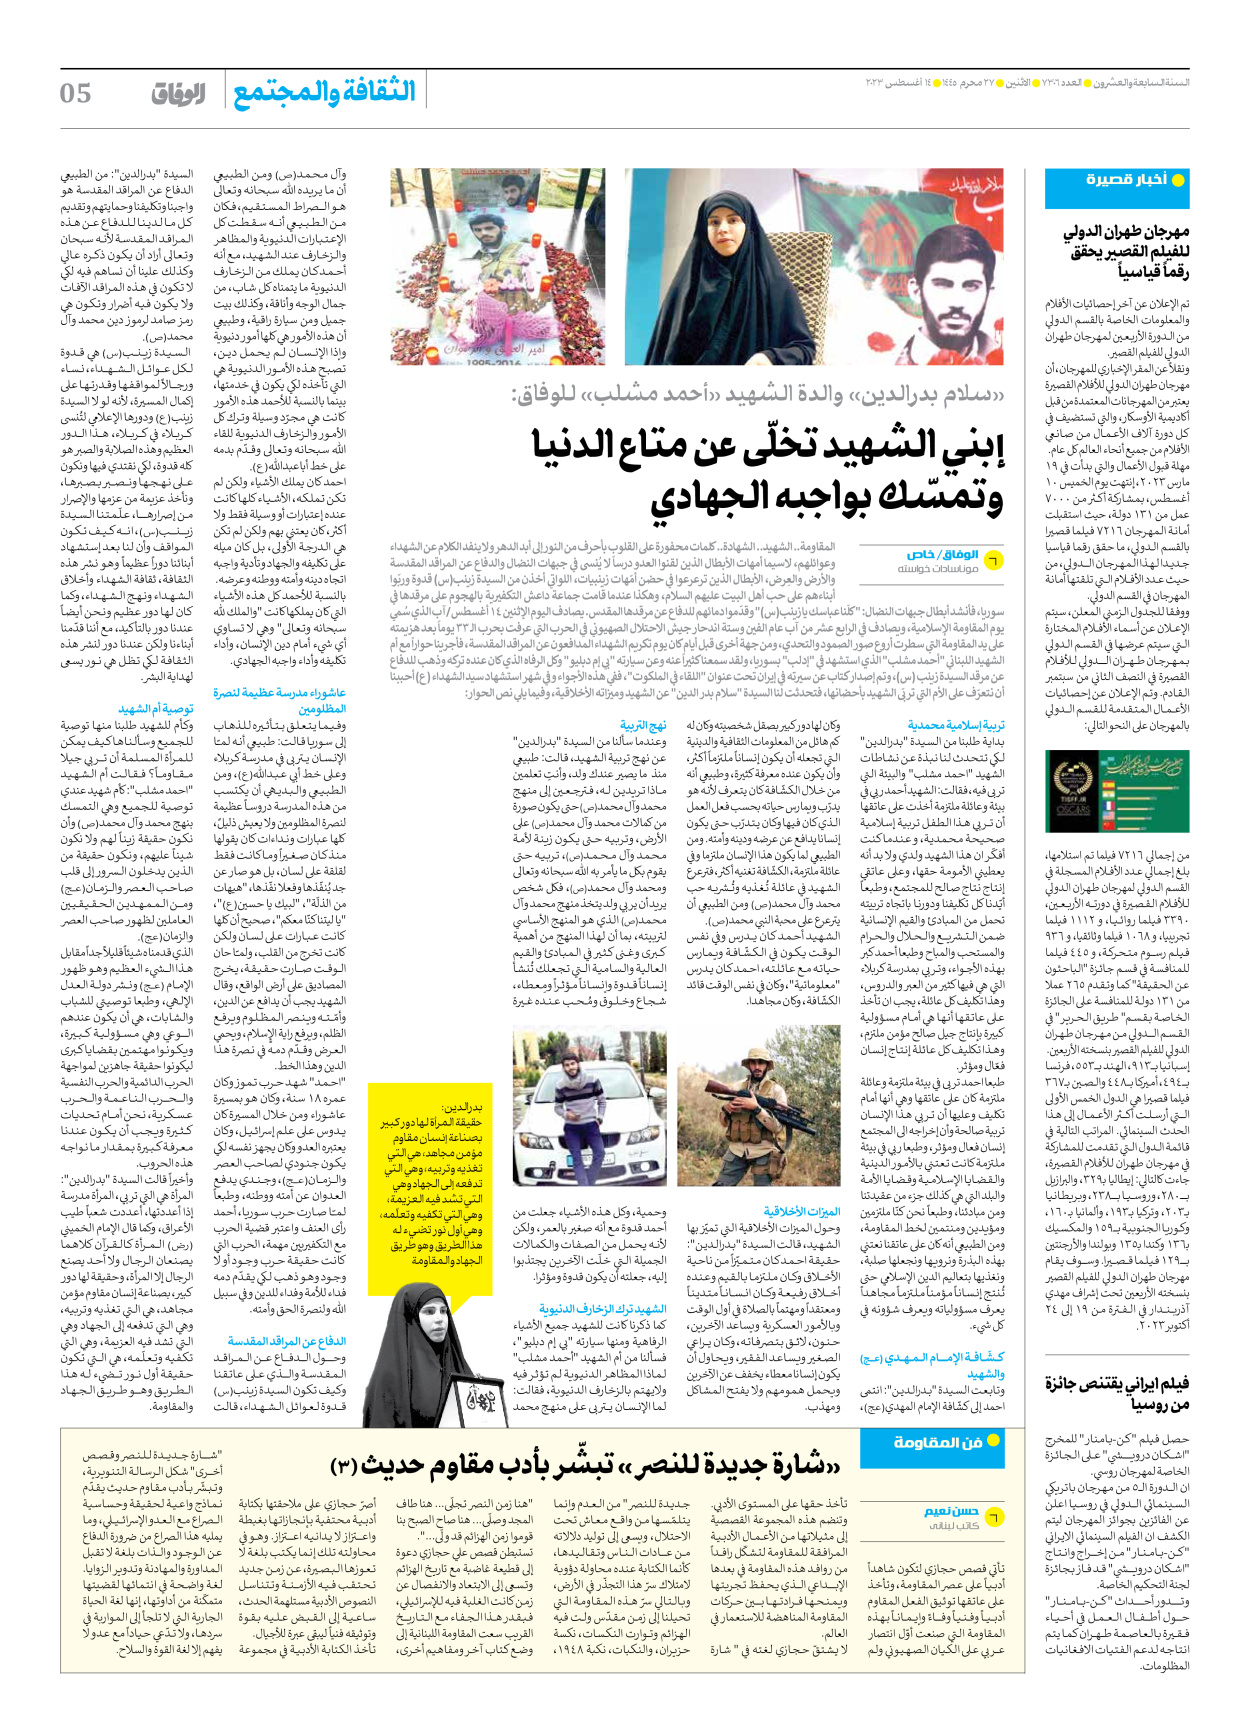 صحیفة ایران الدولیة الوفاق - العدد سبعة آلاف وثلاثمائة وستة - ١٤ أغسطس ٢٠٢٣ - الصفحة ٥